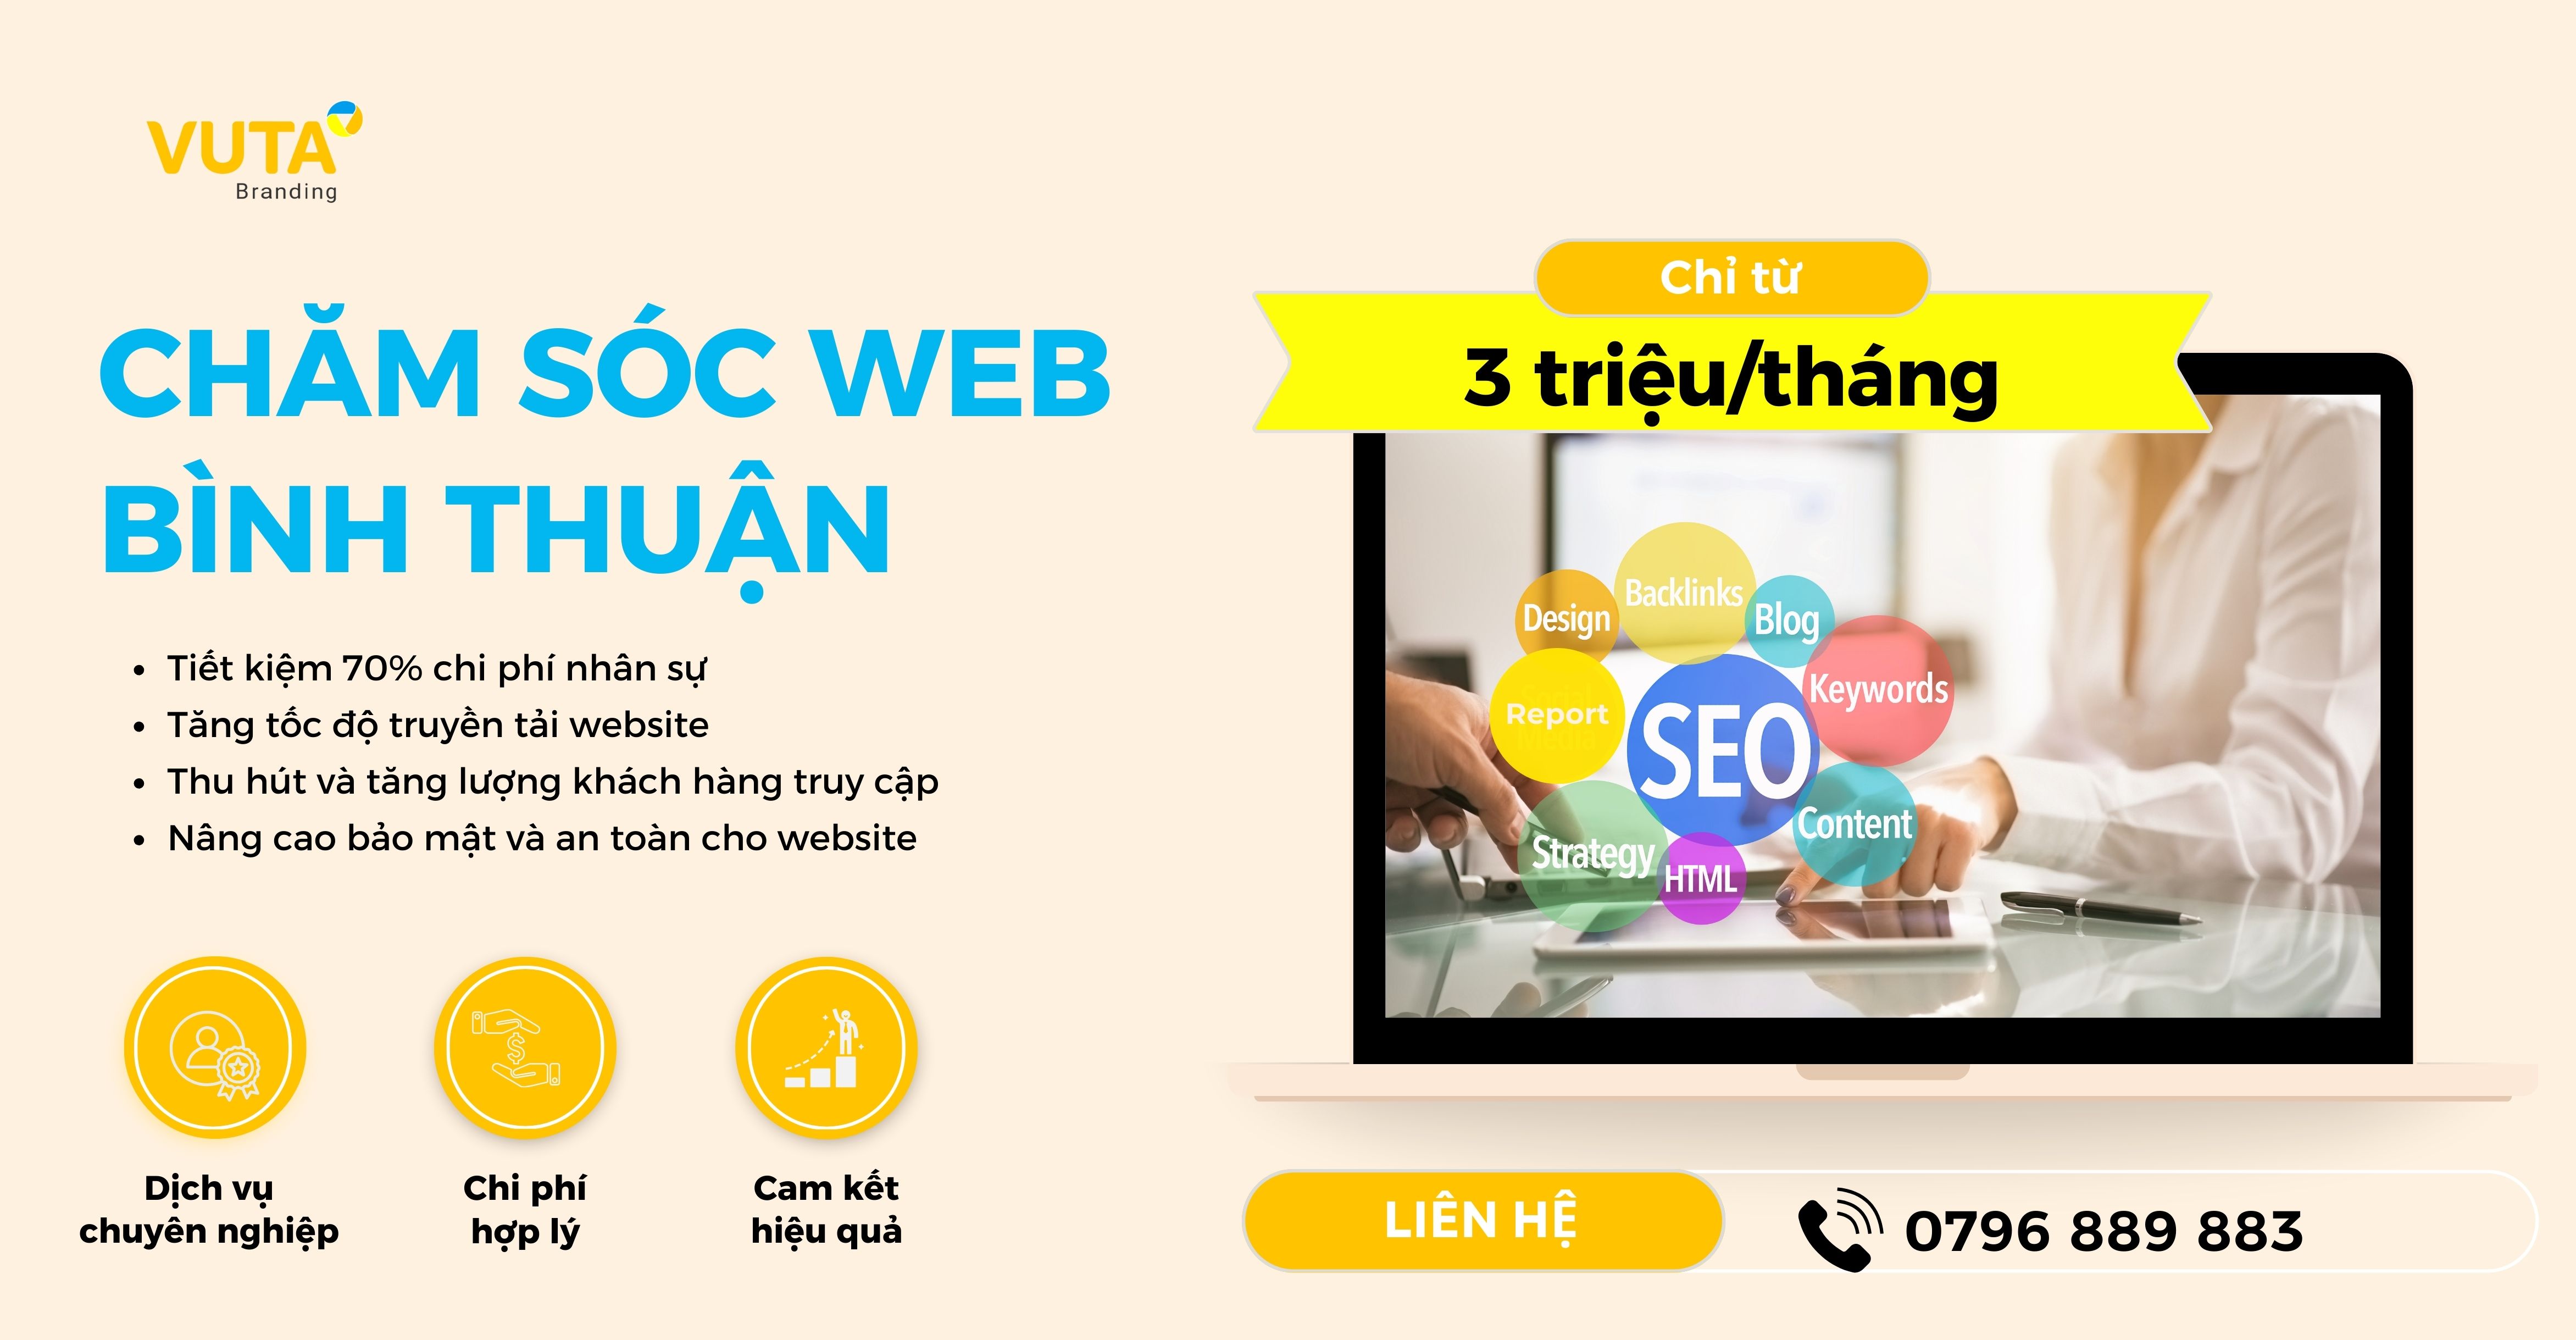 Dịch Vụ Chăm Sóc Web Bình Thuận Hiệu Quả Nhất